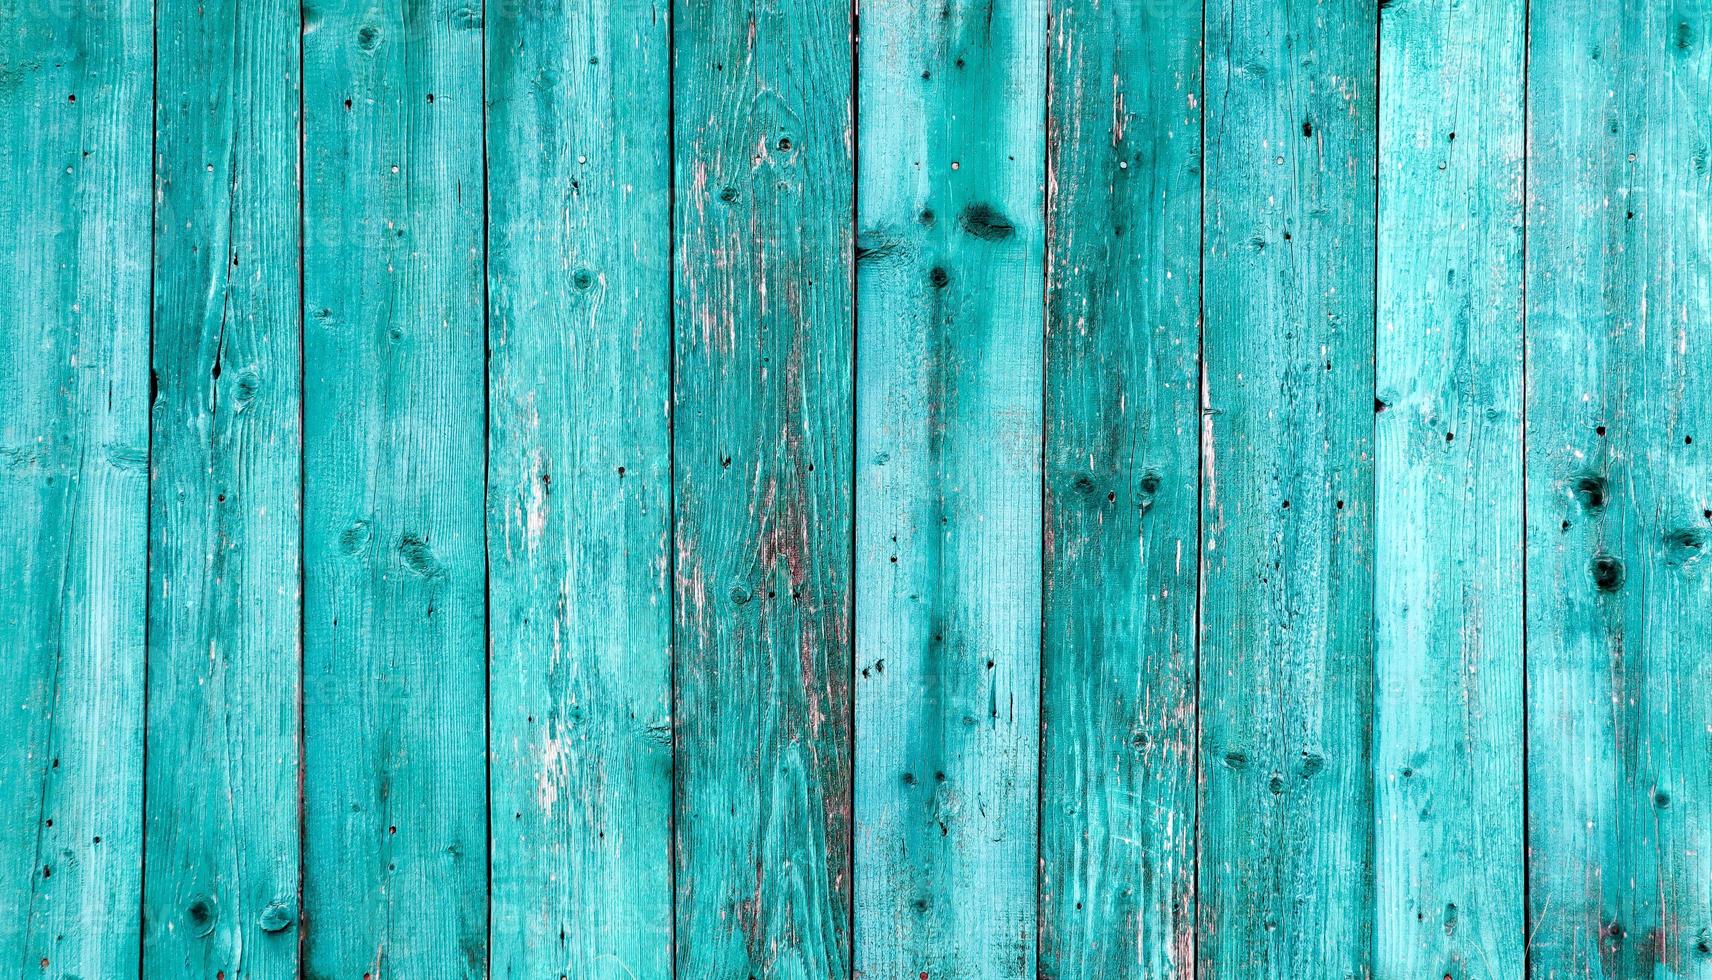 vieux fond de texture bois bleu foncé. mur en bois peint. fond bleu une clôture lumineuse faite de planches verticales. la texture d'une planche de bois peut être utilisée pour l'arrière-plan. un peu de peinture craquelée. photo